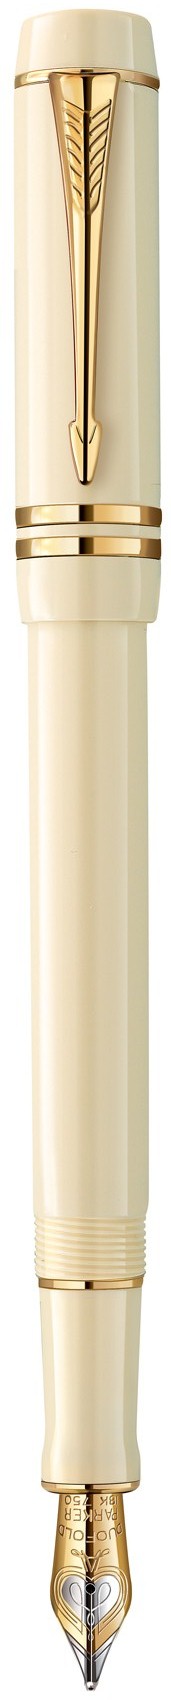 Bút máy Parker Duofold 14 Centennial Ivory cài vàng